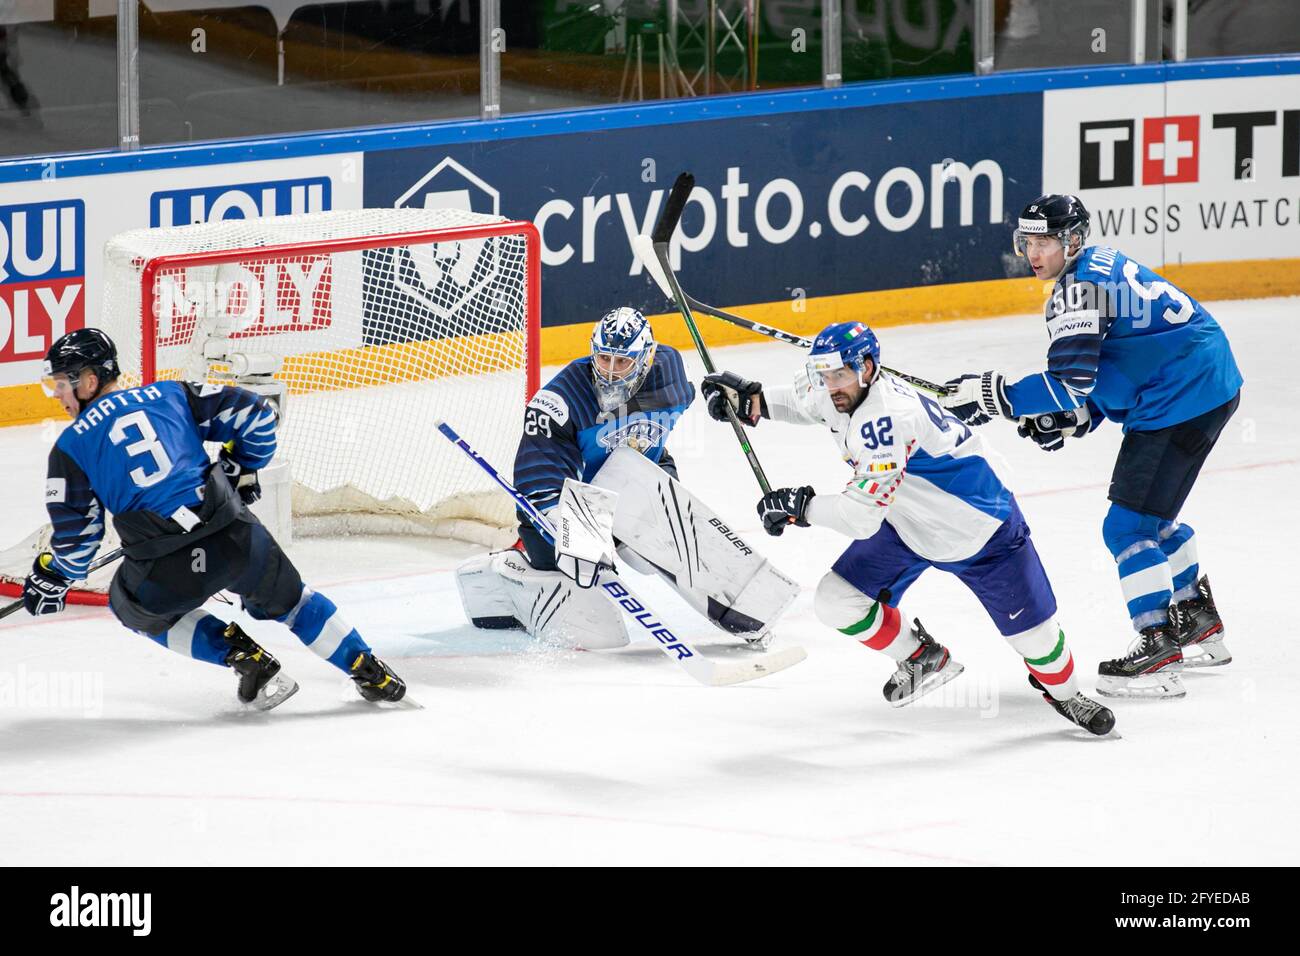 Sateri Harri (Finland) during World Championship 2021 - Finland vs Italy, Ice Hockey, Riga, Latvia, 27 May 2021 - Photo .LiveMedia/Andrea Re Stock Photo 